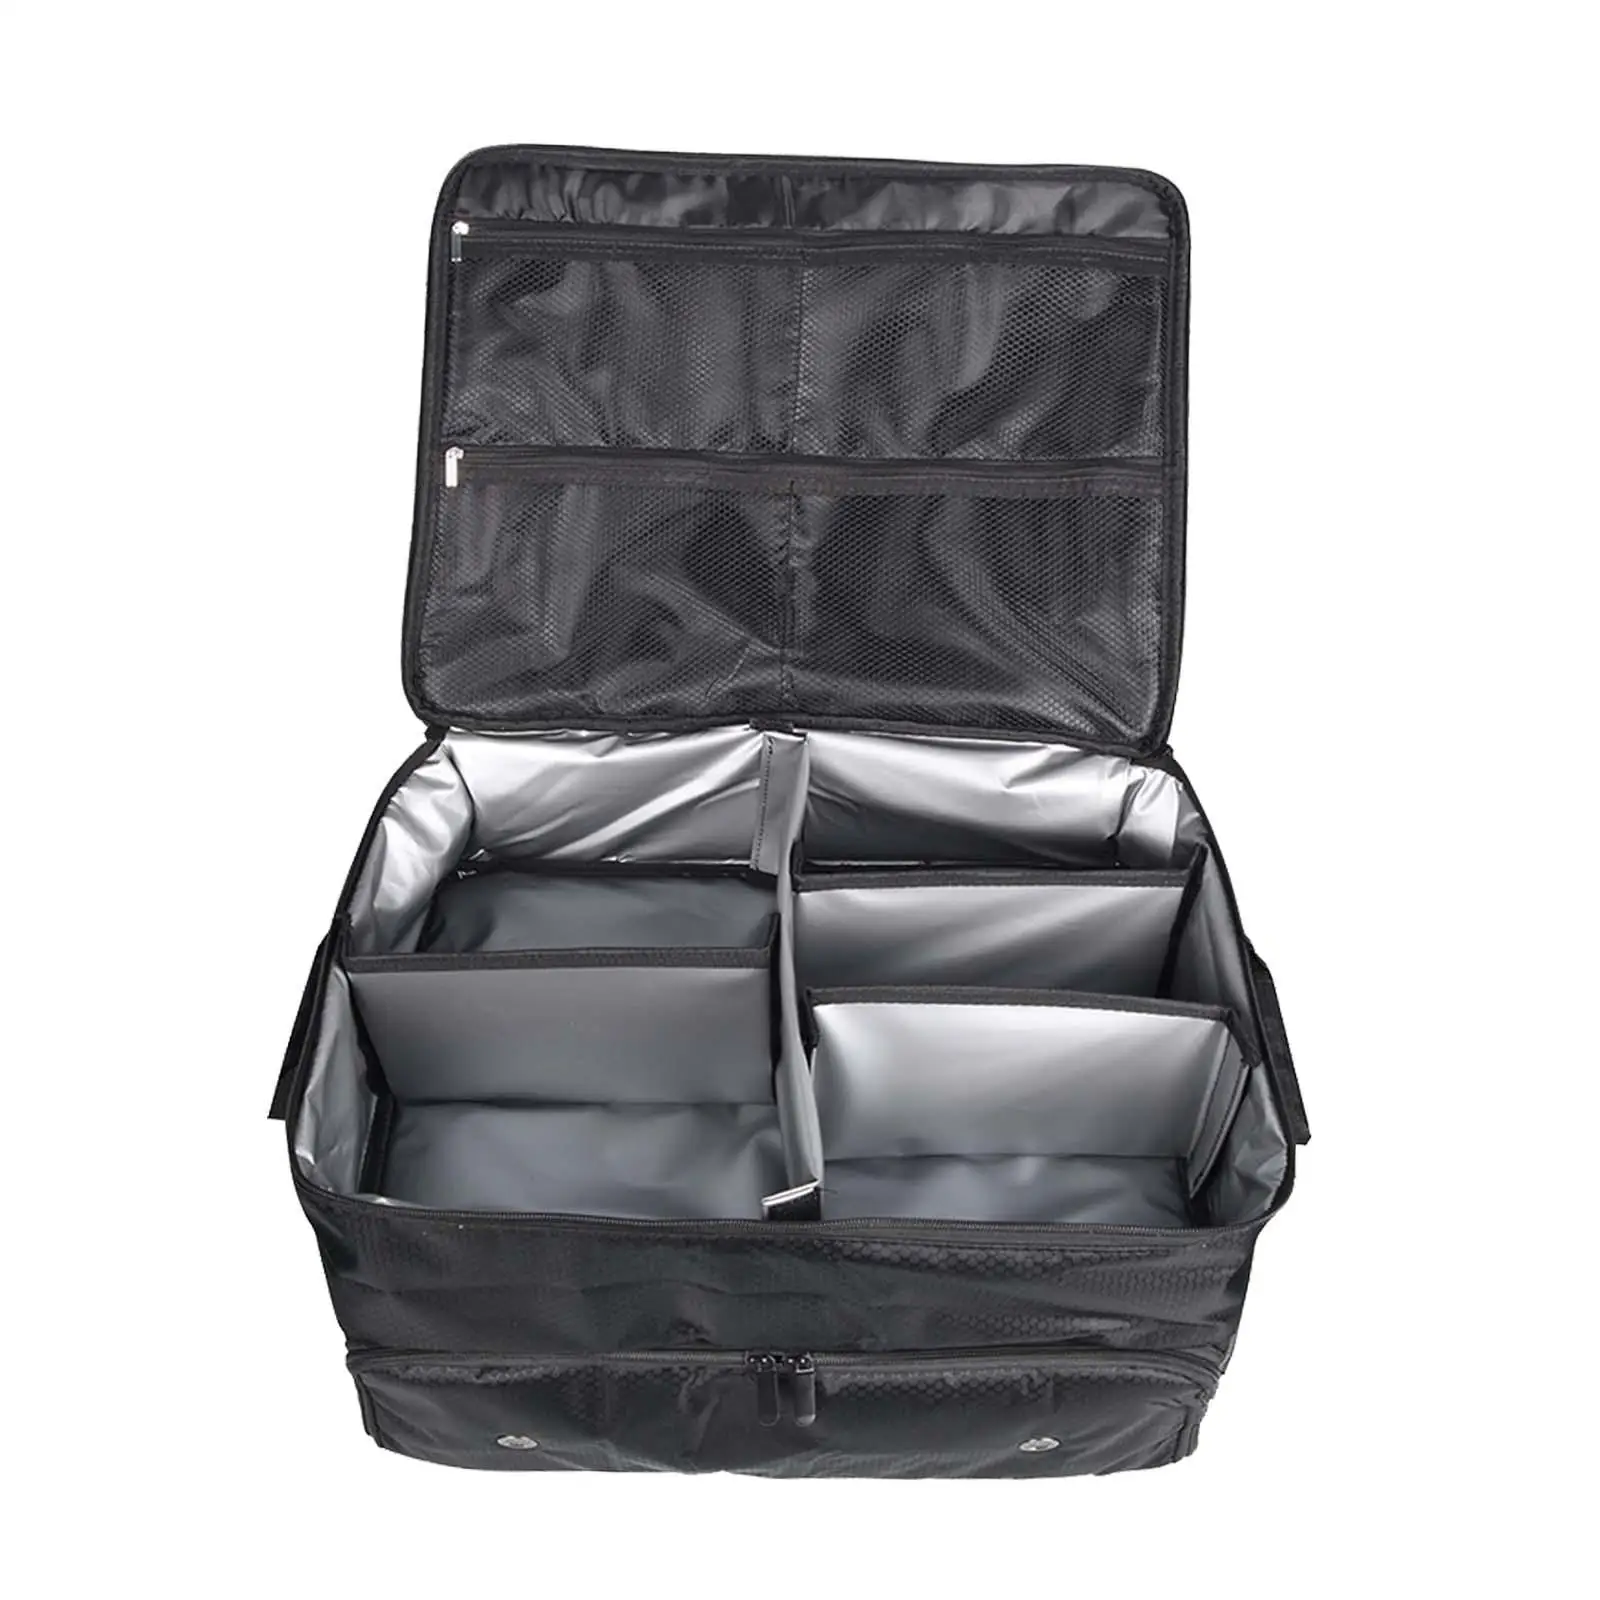 Органайзер для багажника для гольфа, складной багажник для хранения предметов первой необходимости, дорожная сумка, шкафчик для одежды, отличная идея подарка для игроков в гольф - 3